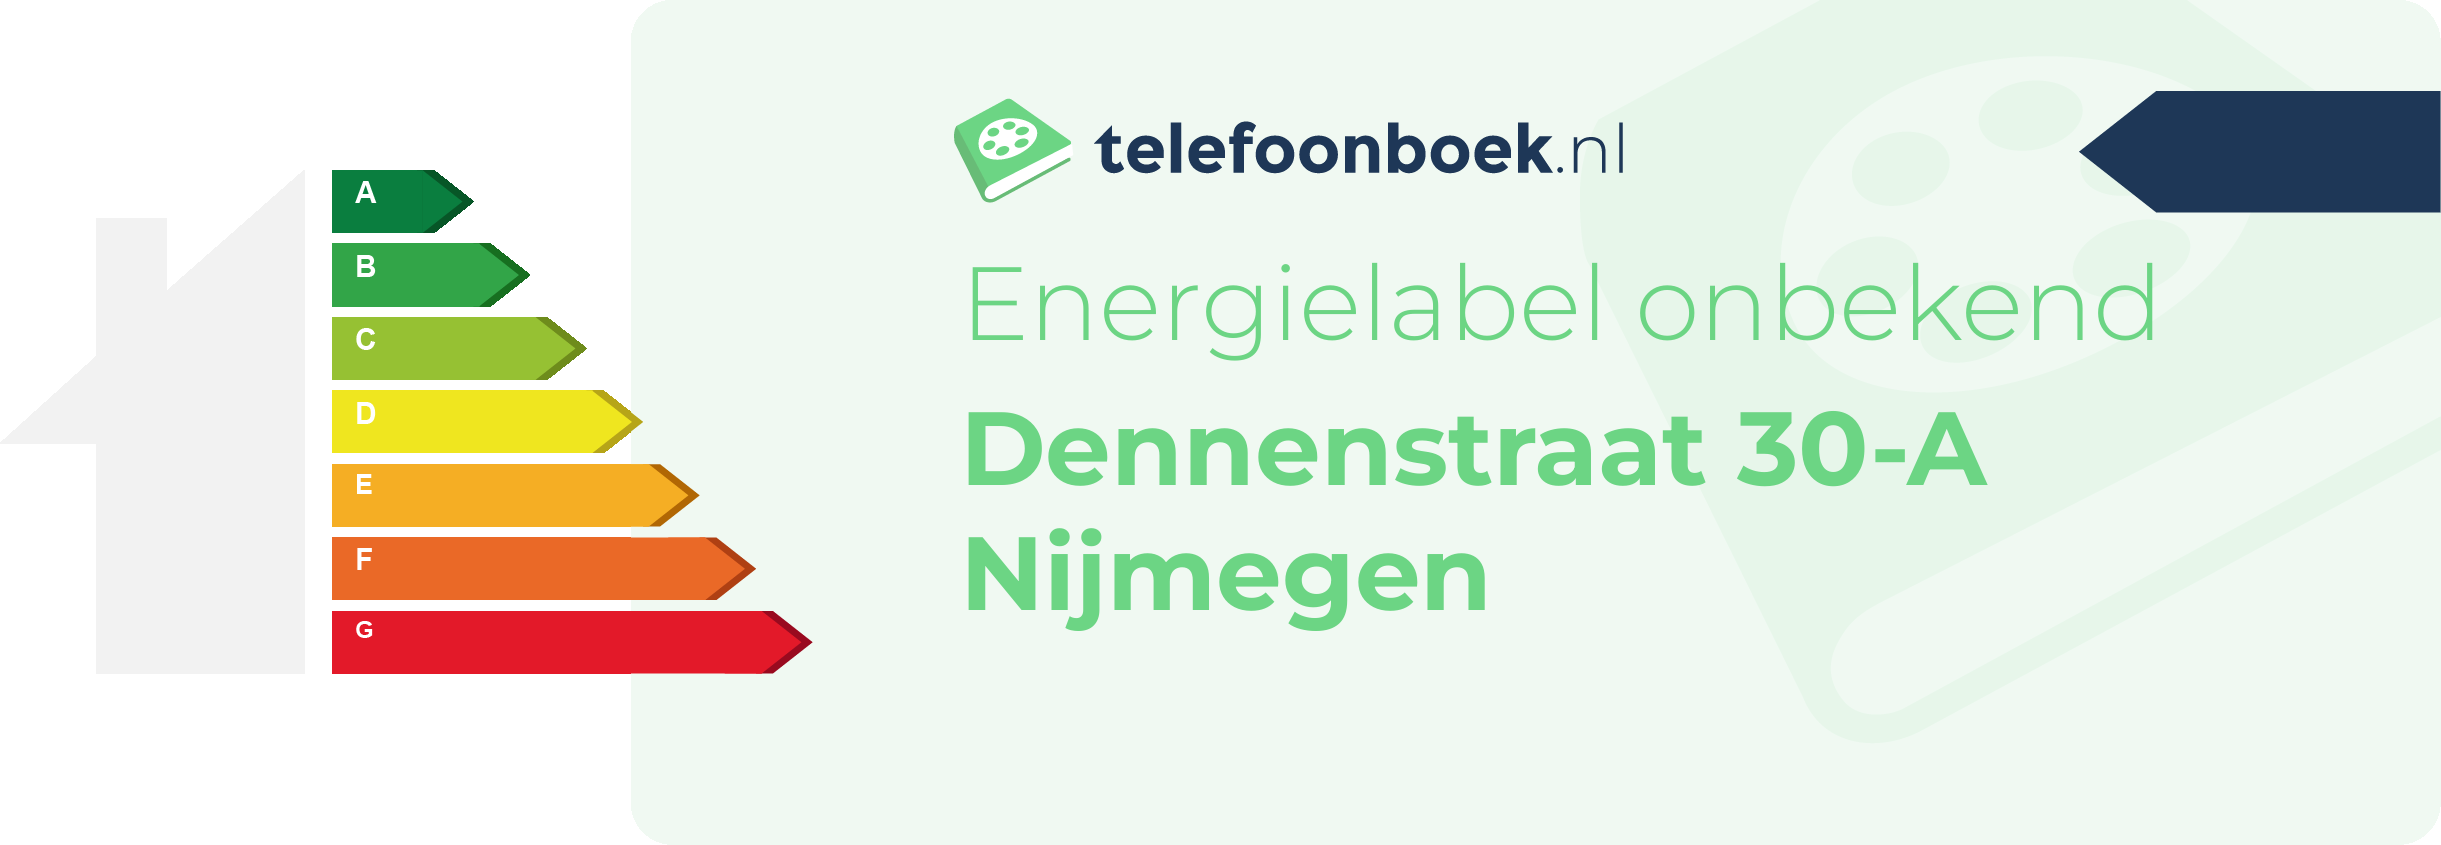 Energielabel Dennenstraat 30-A Nijmegen